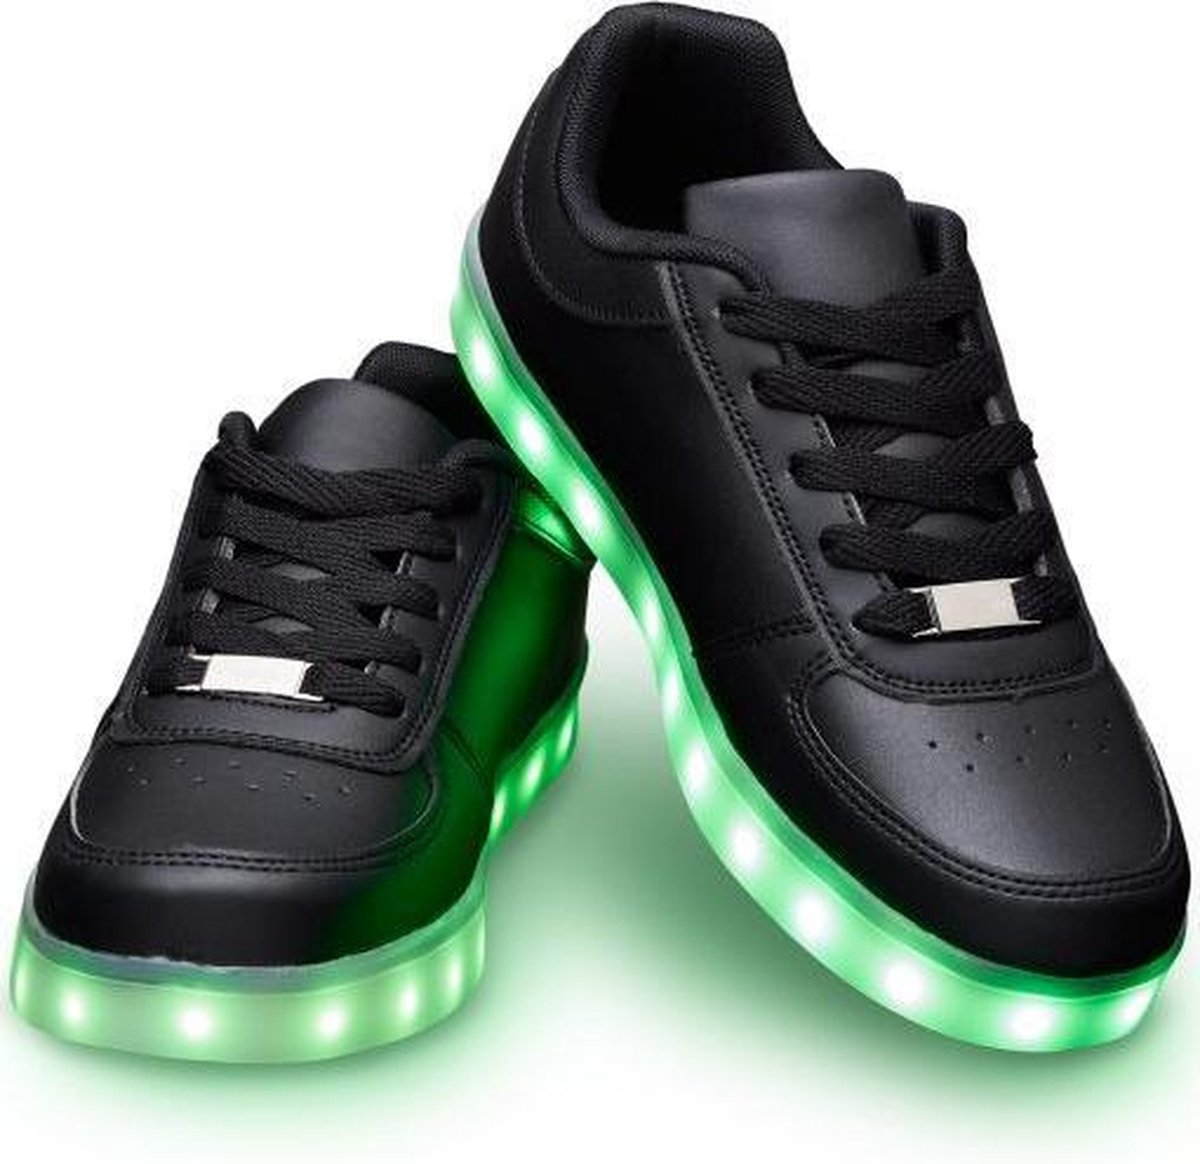 Schoenen met lichtjes - Lichtgevende led schoenen - Zwart - Maat 44